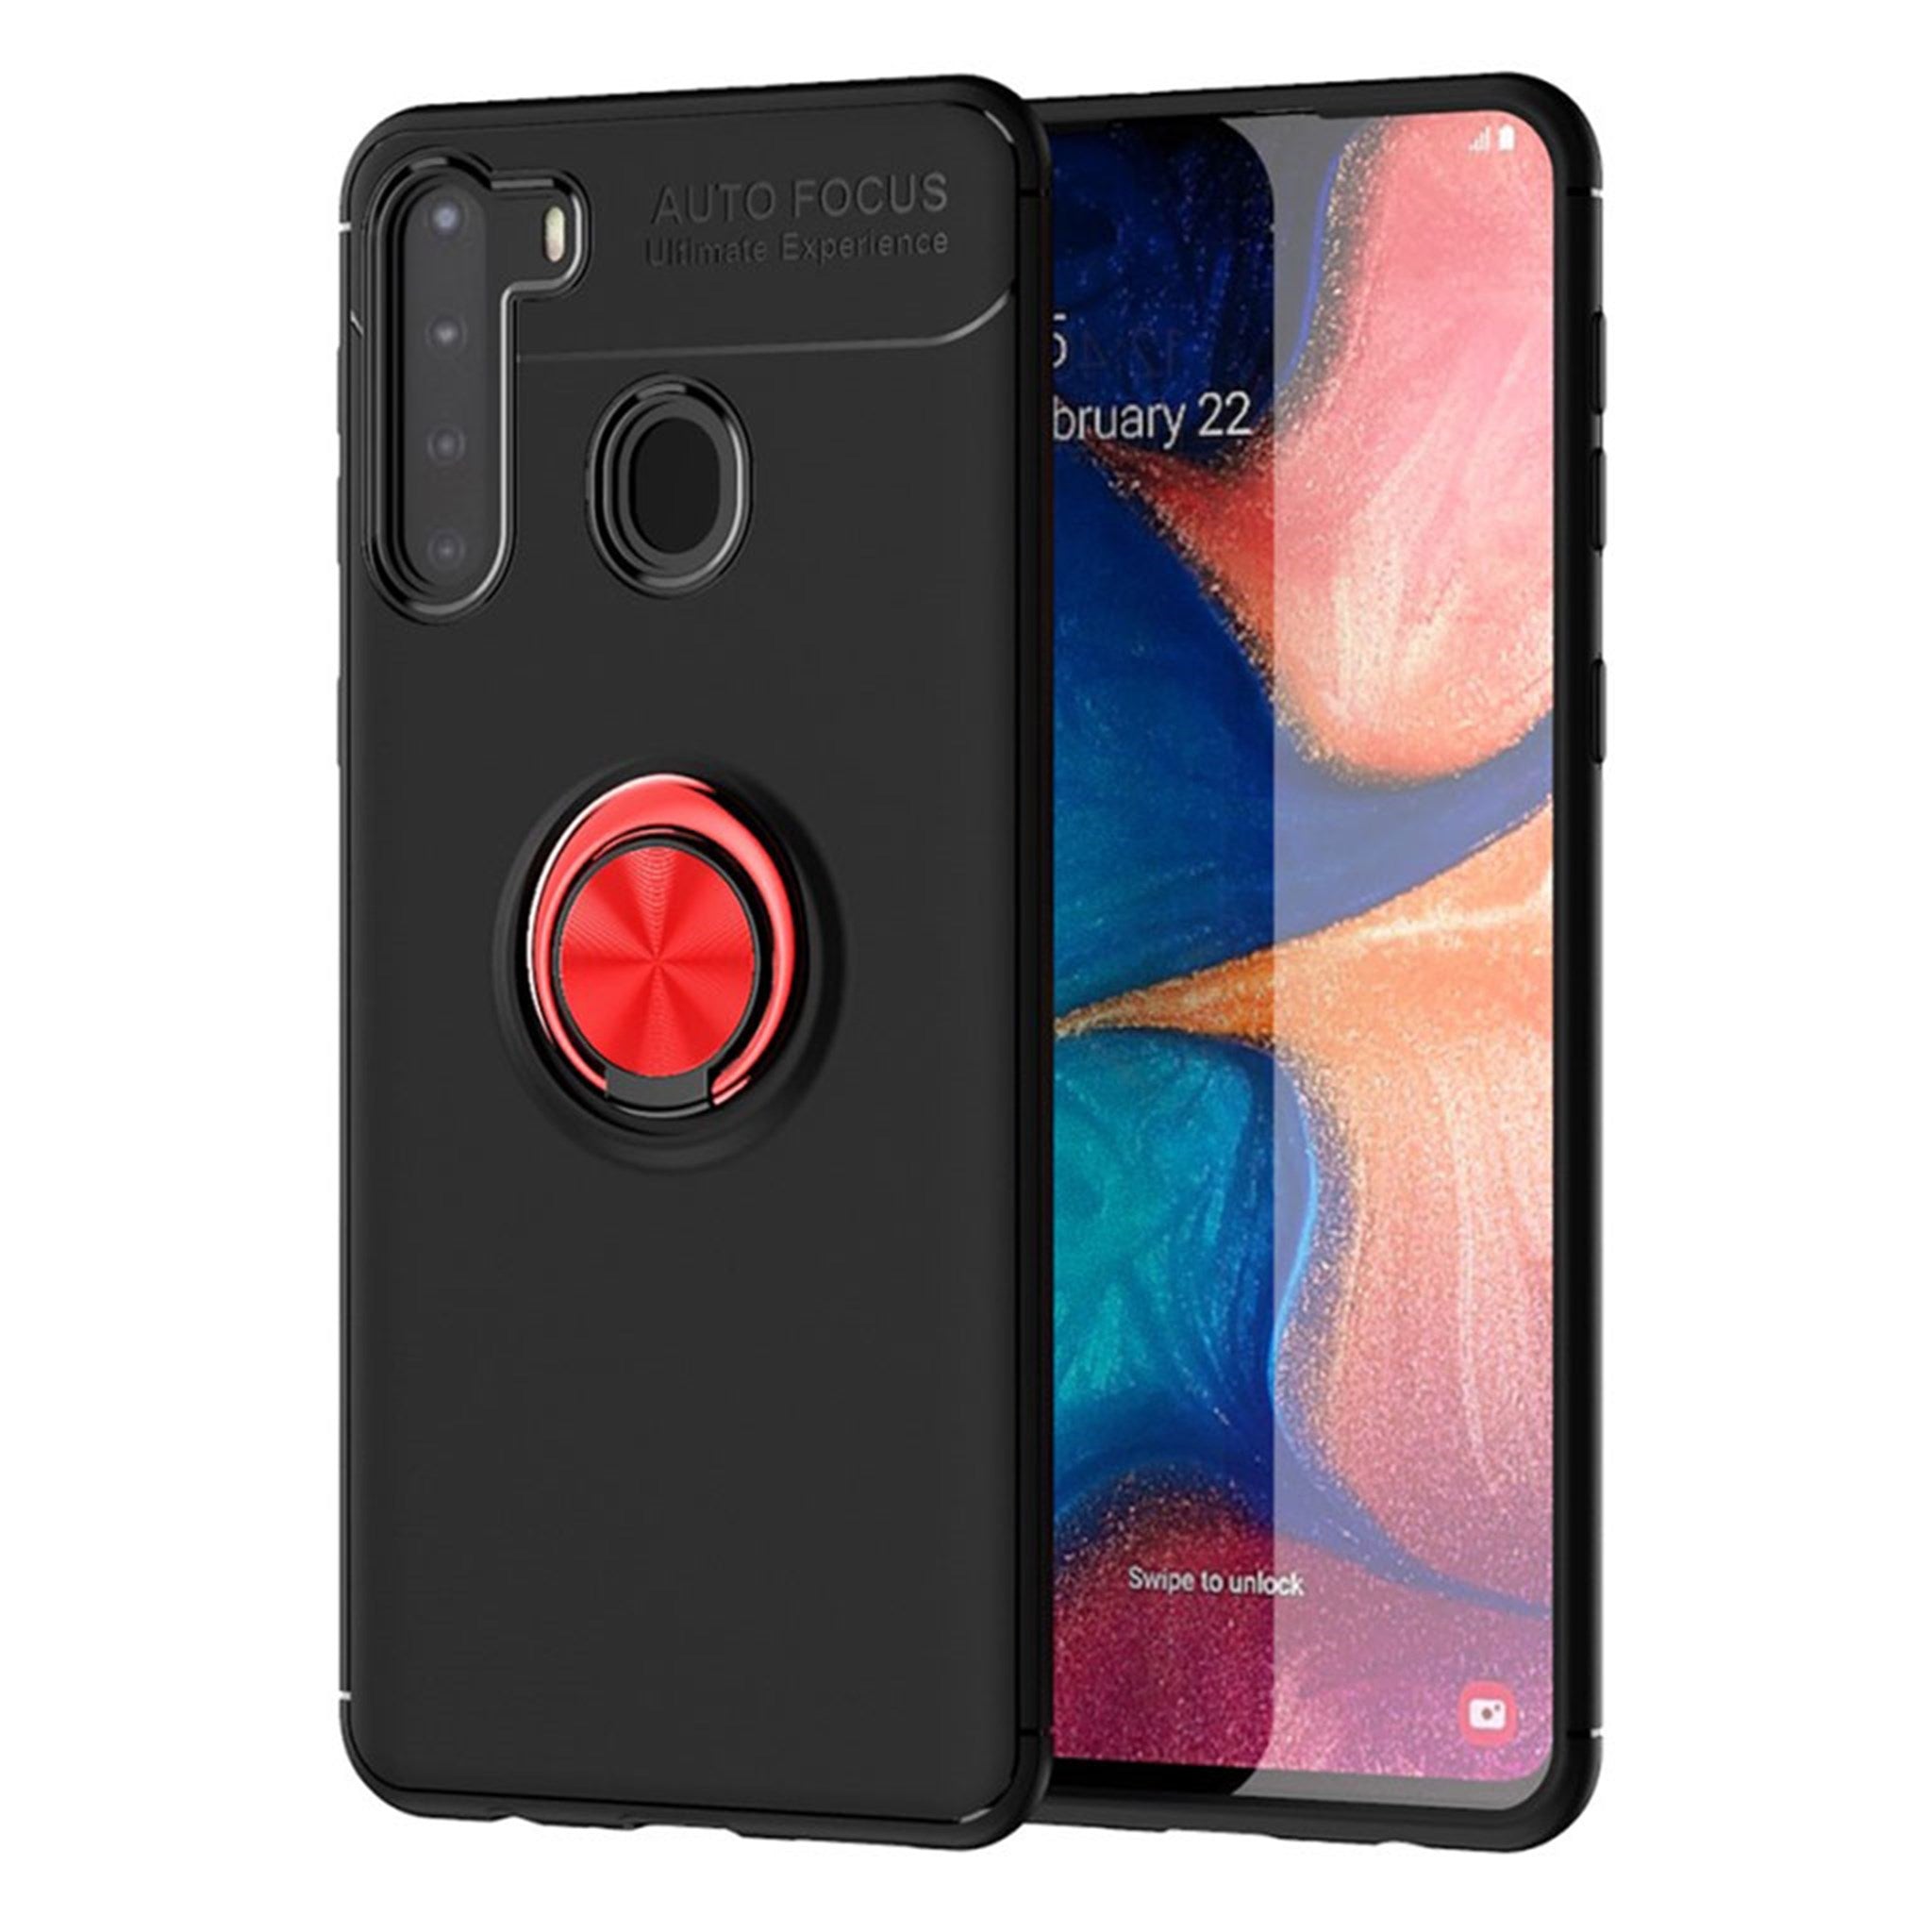 Ringo case - Samsung Galaxy A21 - Black / Red